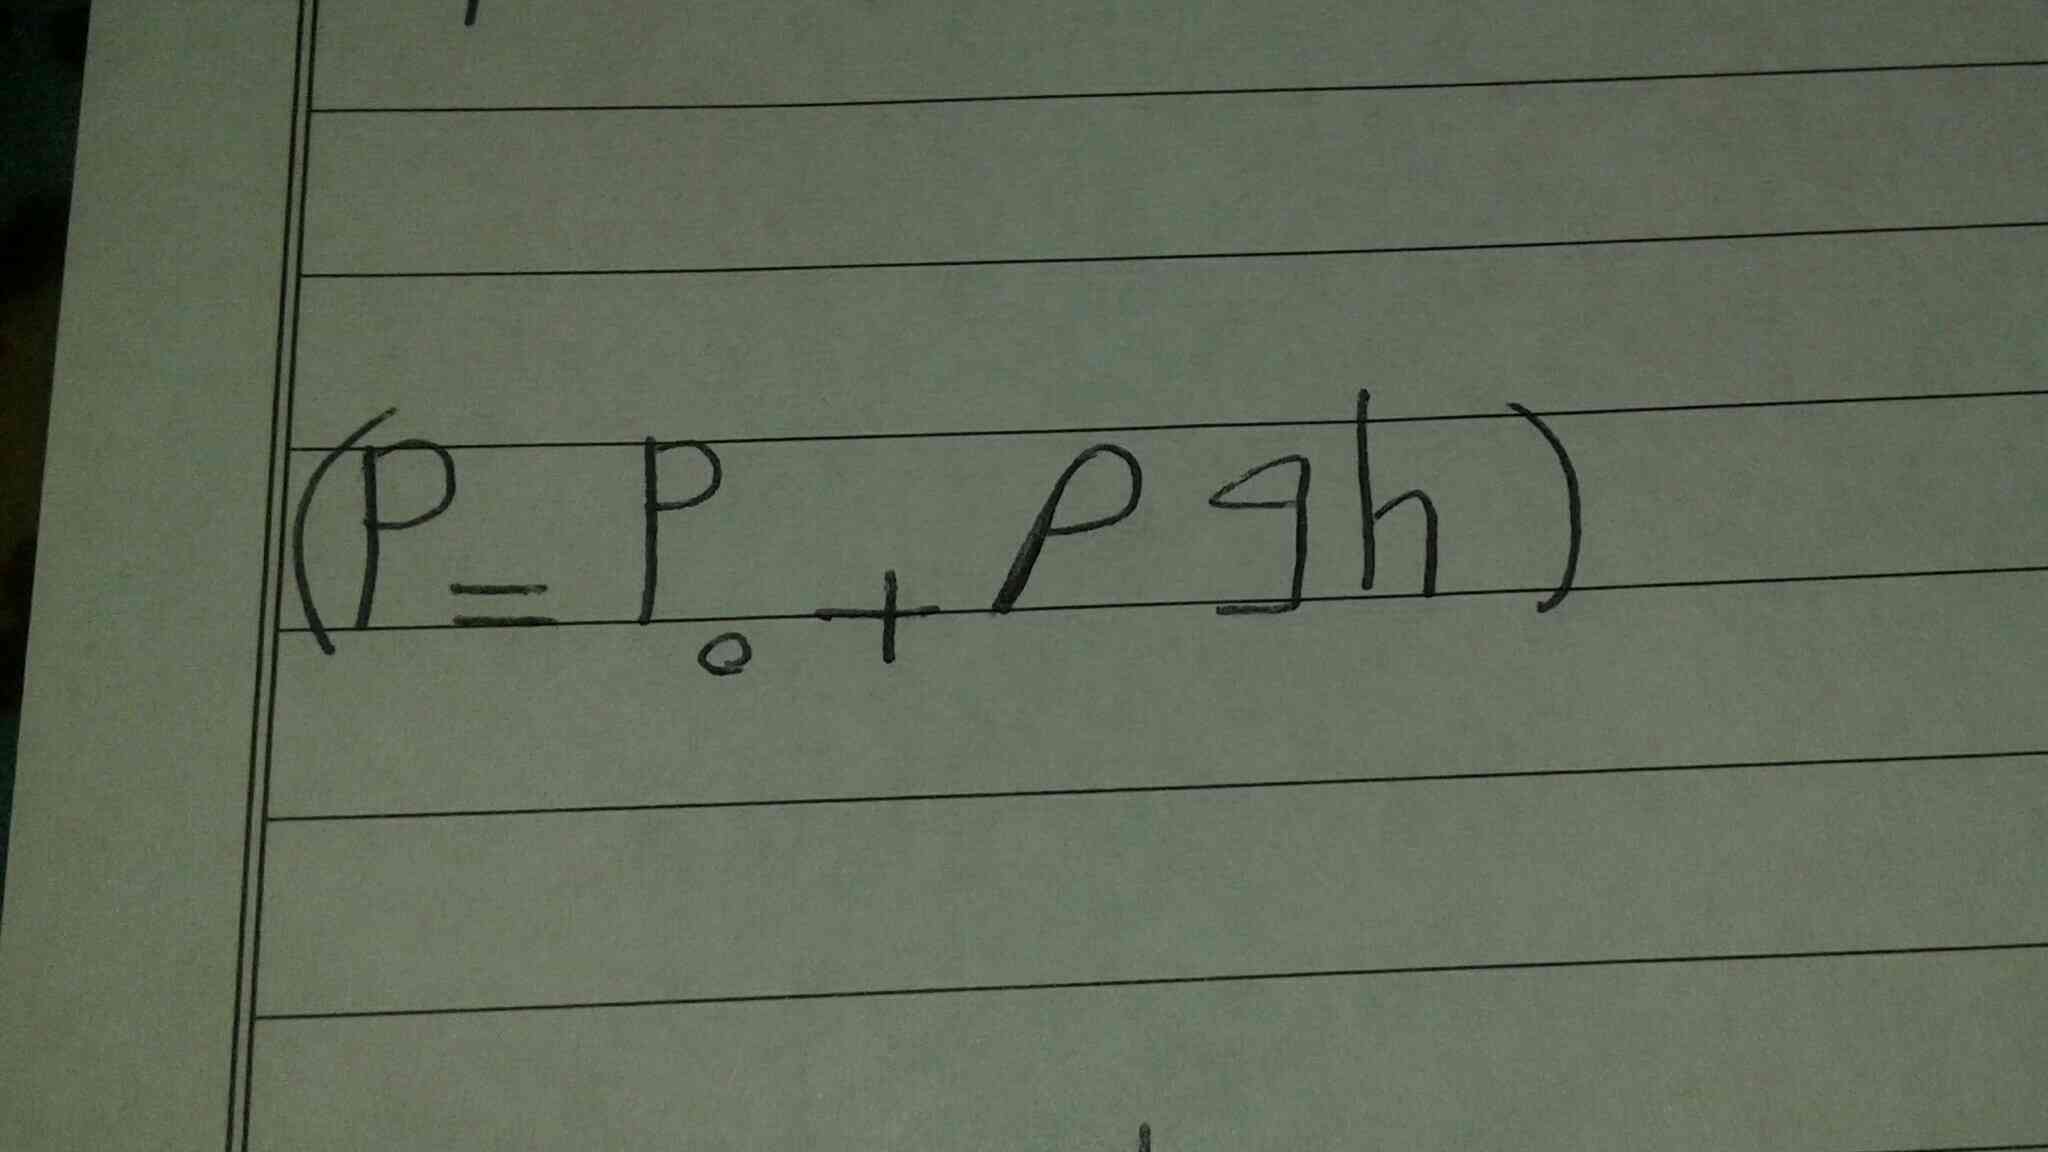 ازاین فرمول چه زمانی استفاده می شه